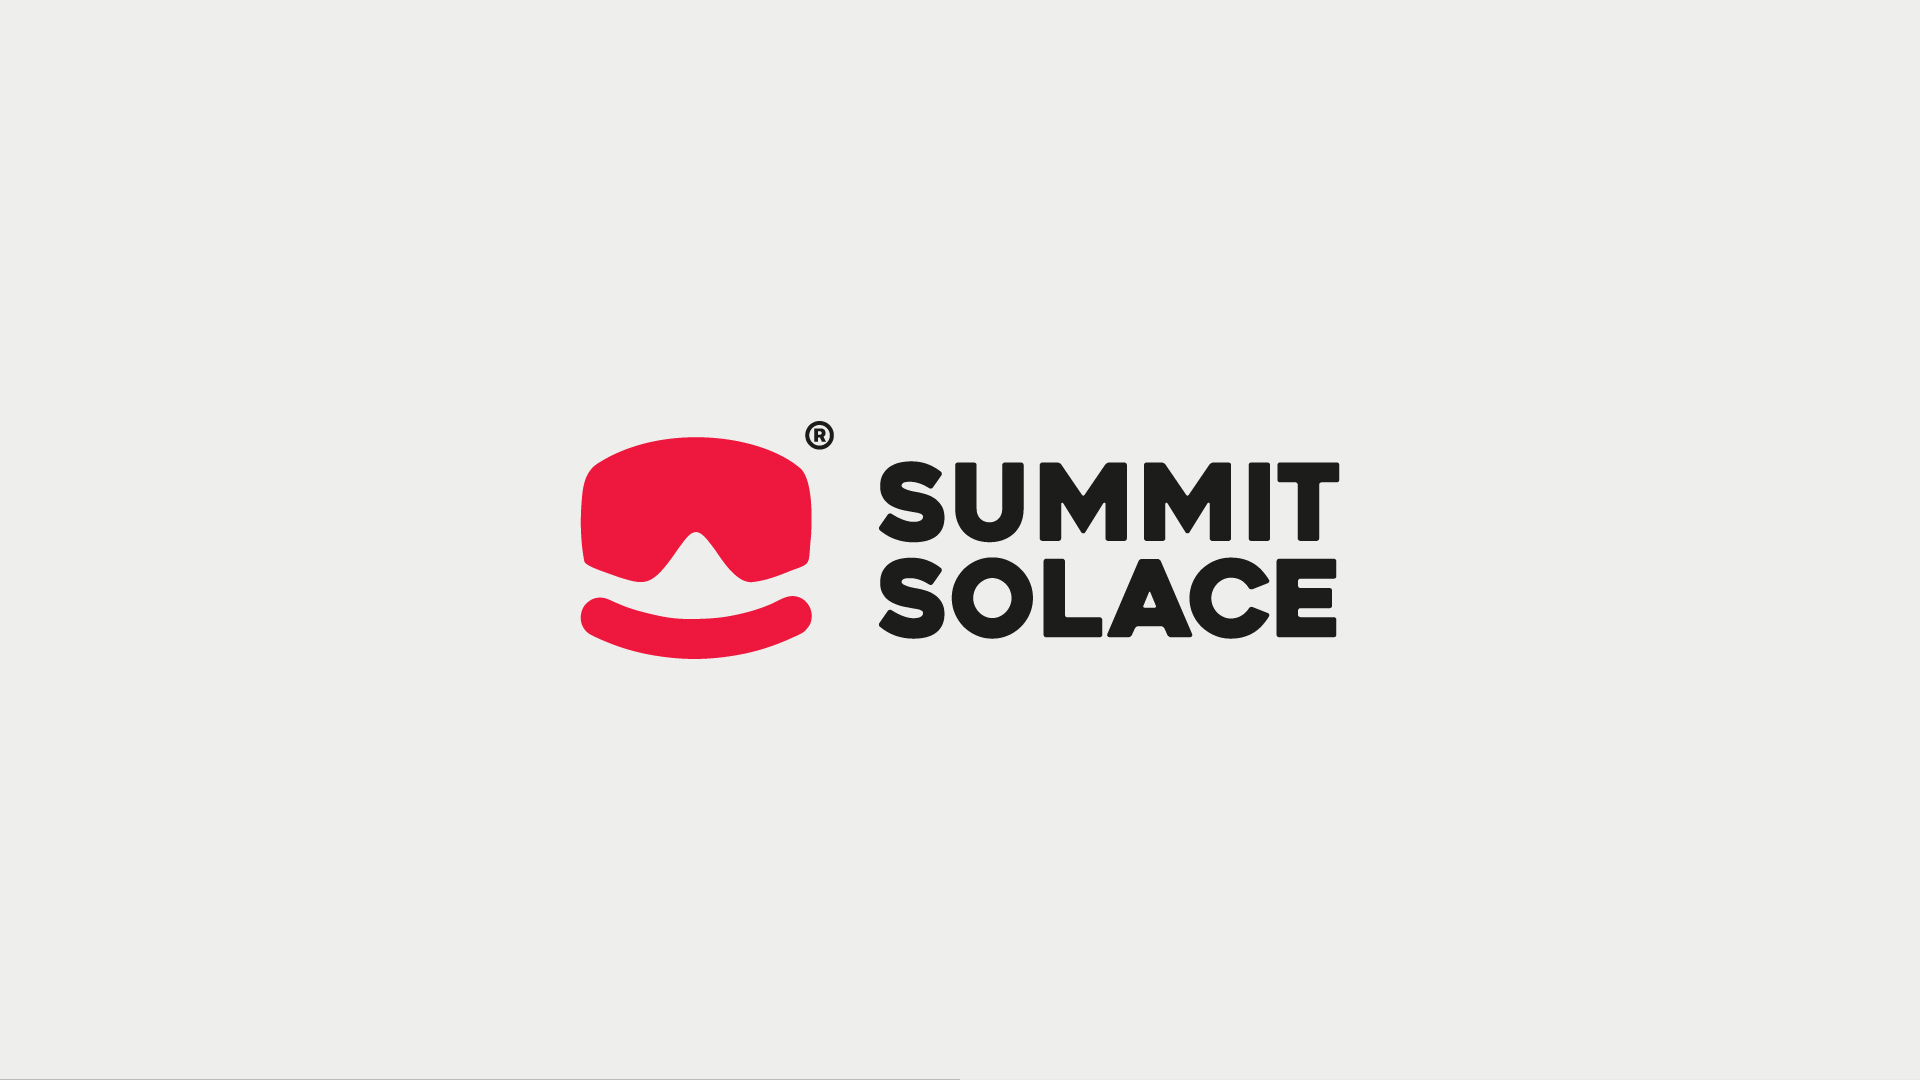 Aymen El Farrach Designs Ski Resort Brand Identity for Summit Solace